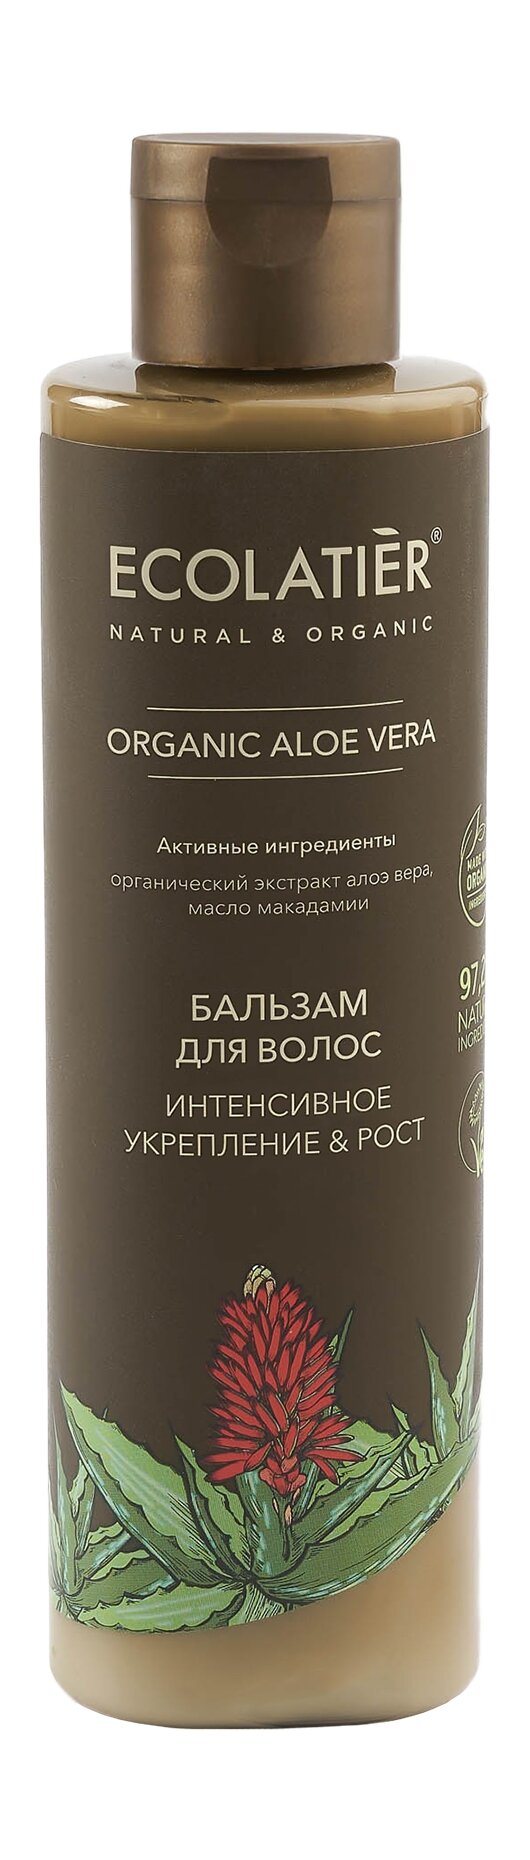 ECOLATIER Бальзам для волос Интенсивное укрепление & Рост Organic Aloe Vera, 250 мл